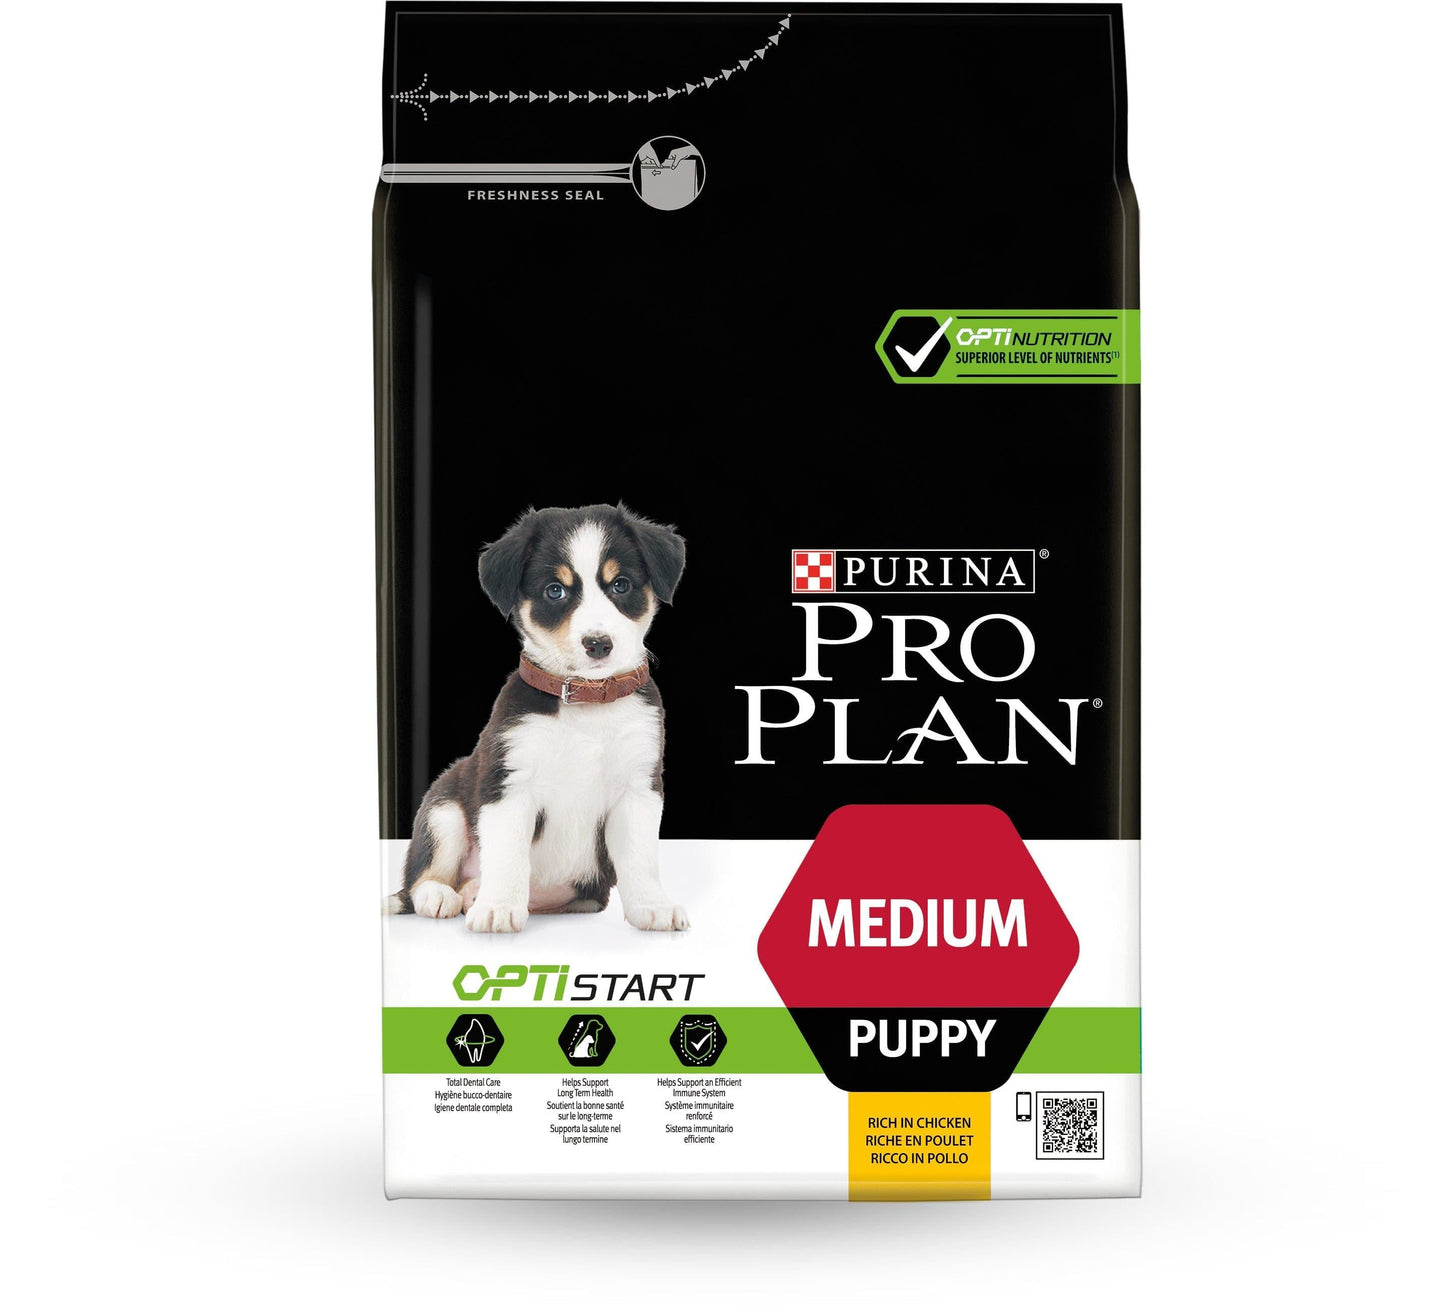 Medium Puppy - Purina ProPlan - Alter:Welpen, Futterart:Trocken, Geschmack:Huhn, Grösse:11-25kg, Kastriert:nein, Tierart:Hund - Marigin AG Onlineshop für Tierbedarf